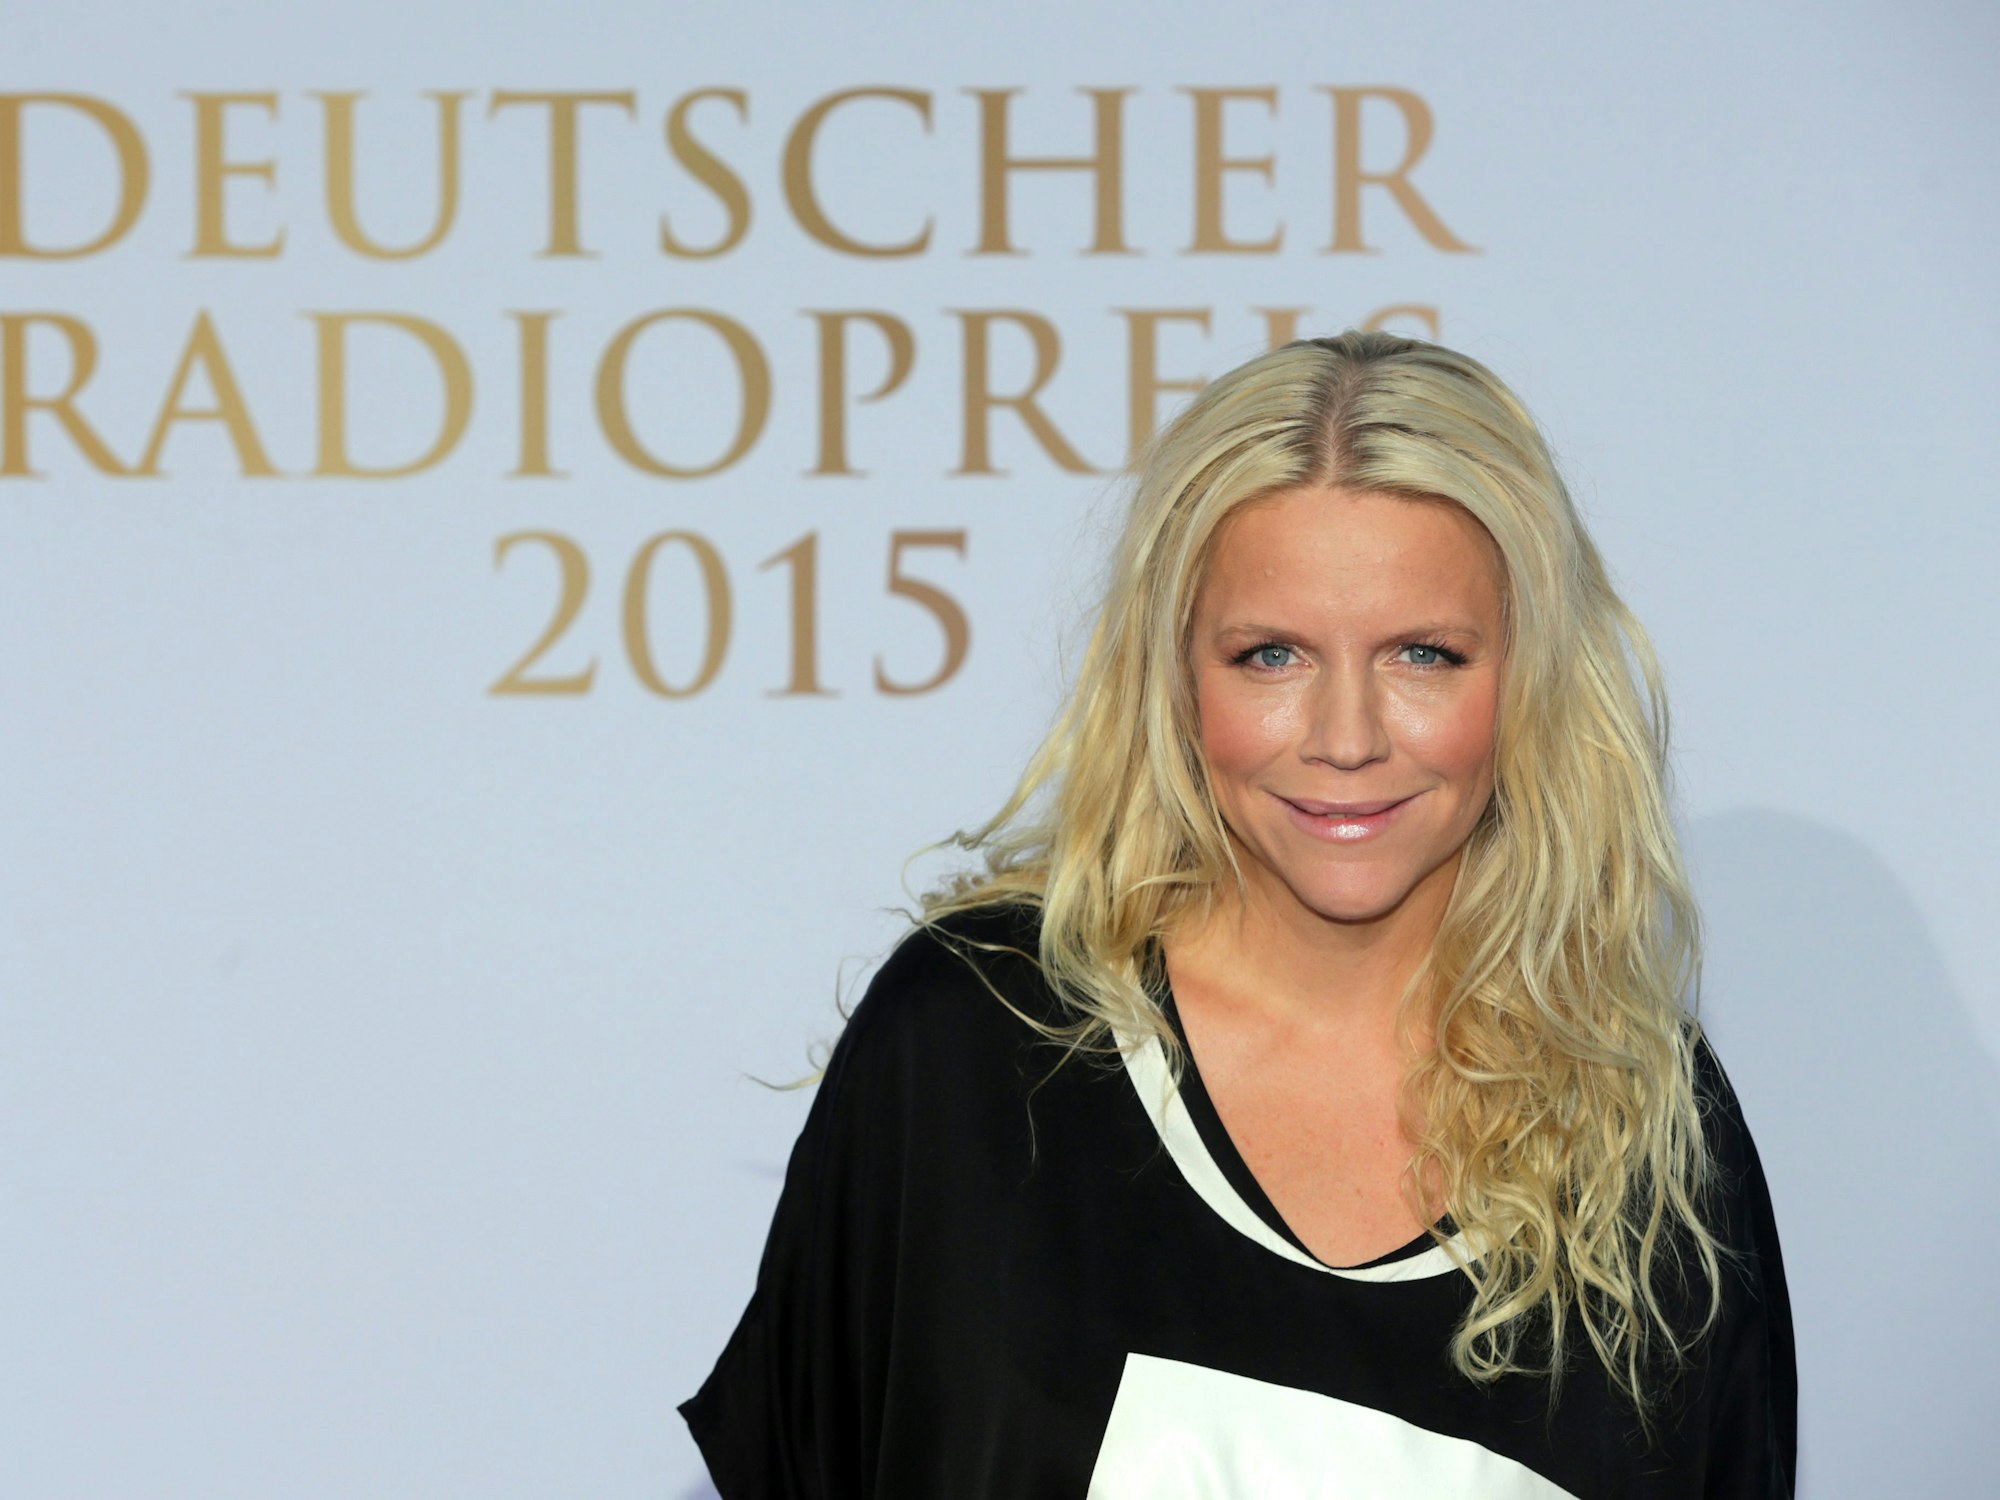 Moderatorin Charlotte Karlinder kommt zur Verleihung des Deutschen Radiopreises in Hamburg.